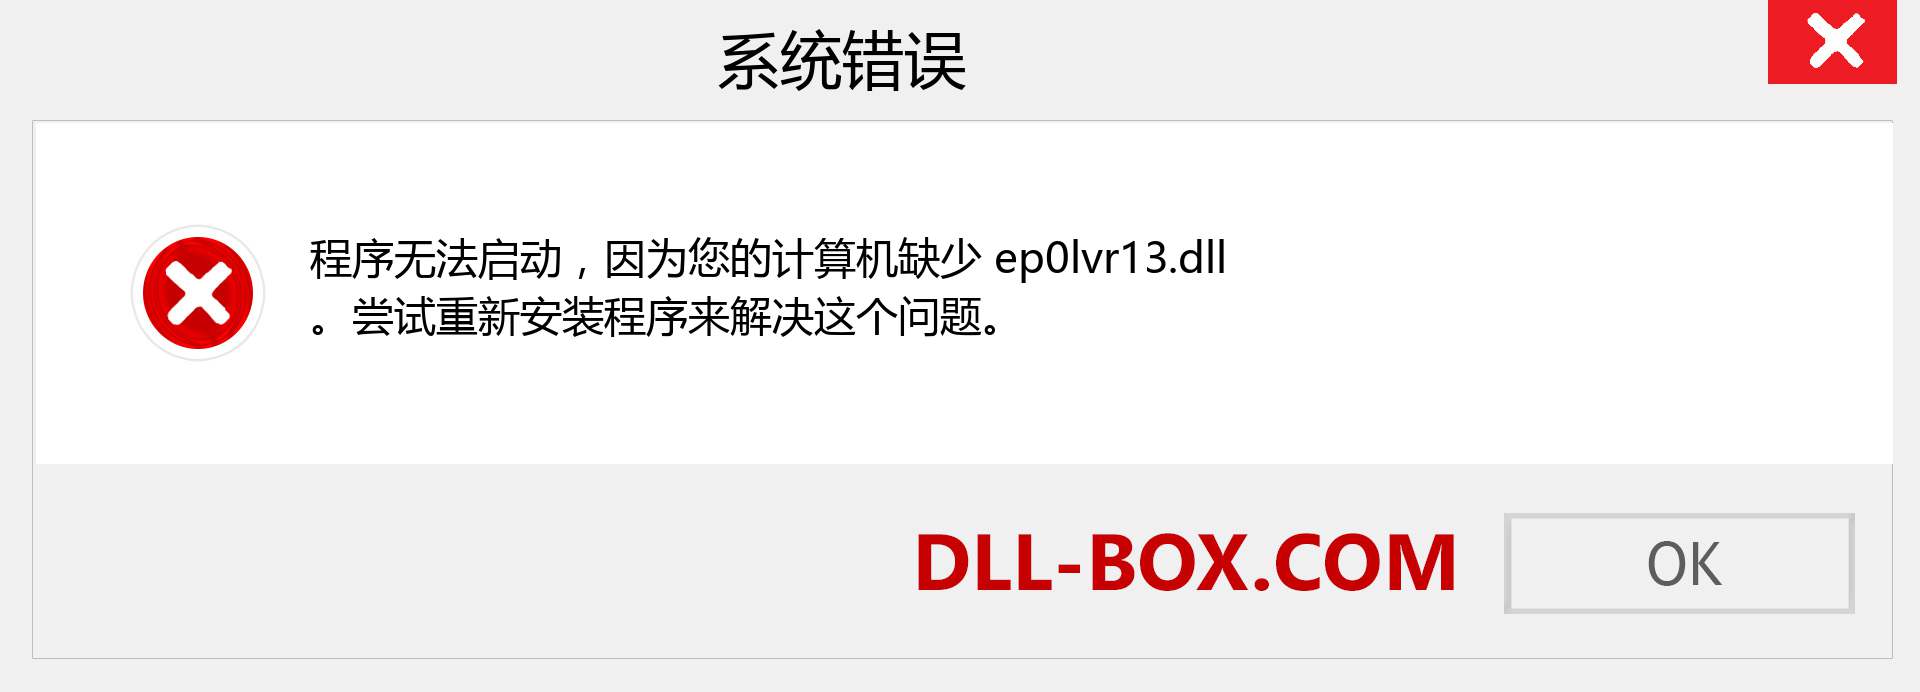 ep0lvr13.dll 文件丢失？。 适用于 Windows 7、8、10 的下载 - 修复 Windows、照片、图像上的 ep0lvr13 dll 丢失错误